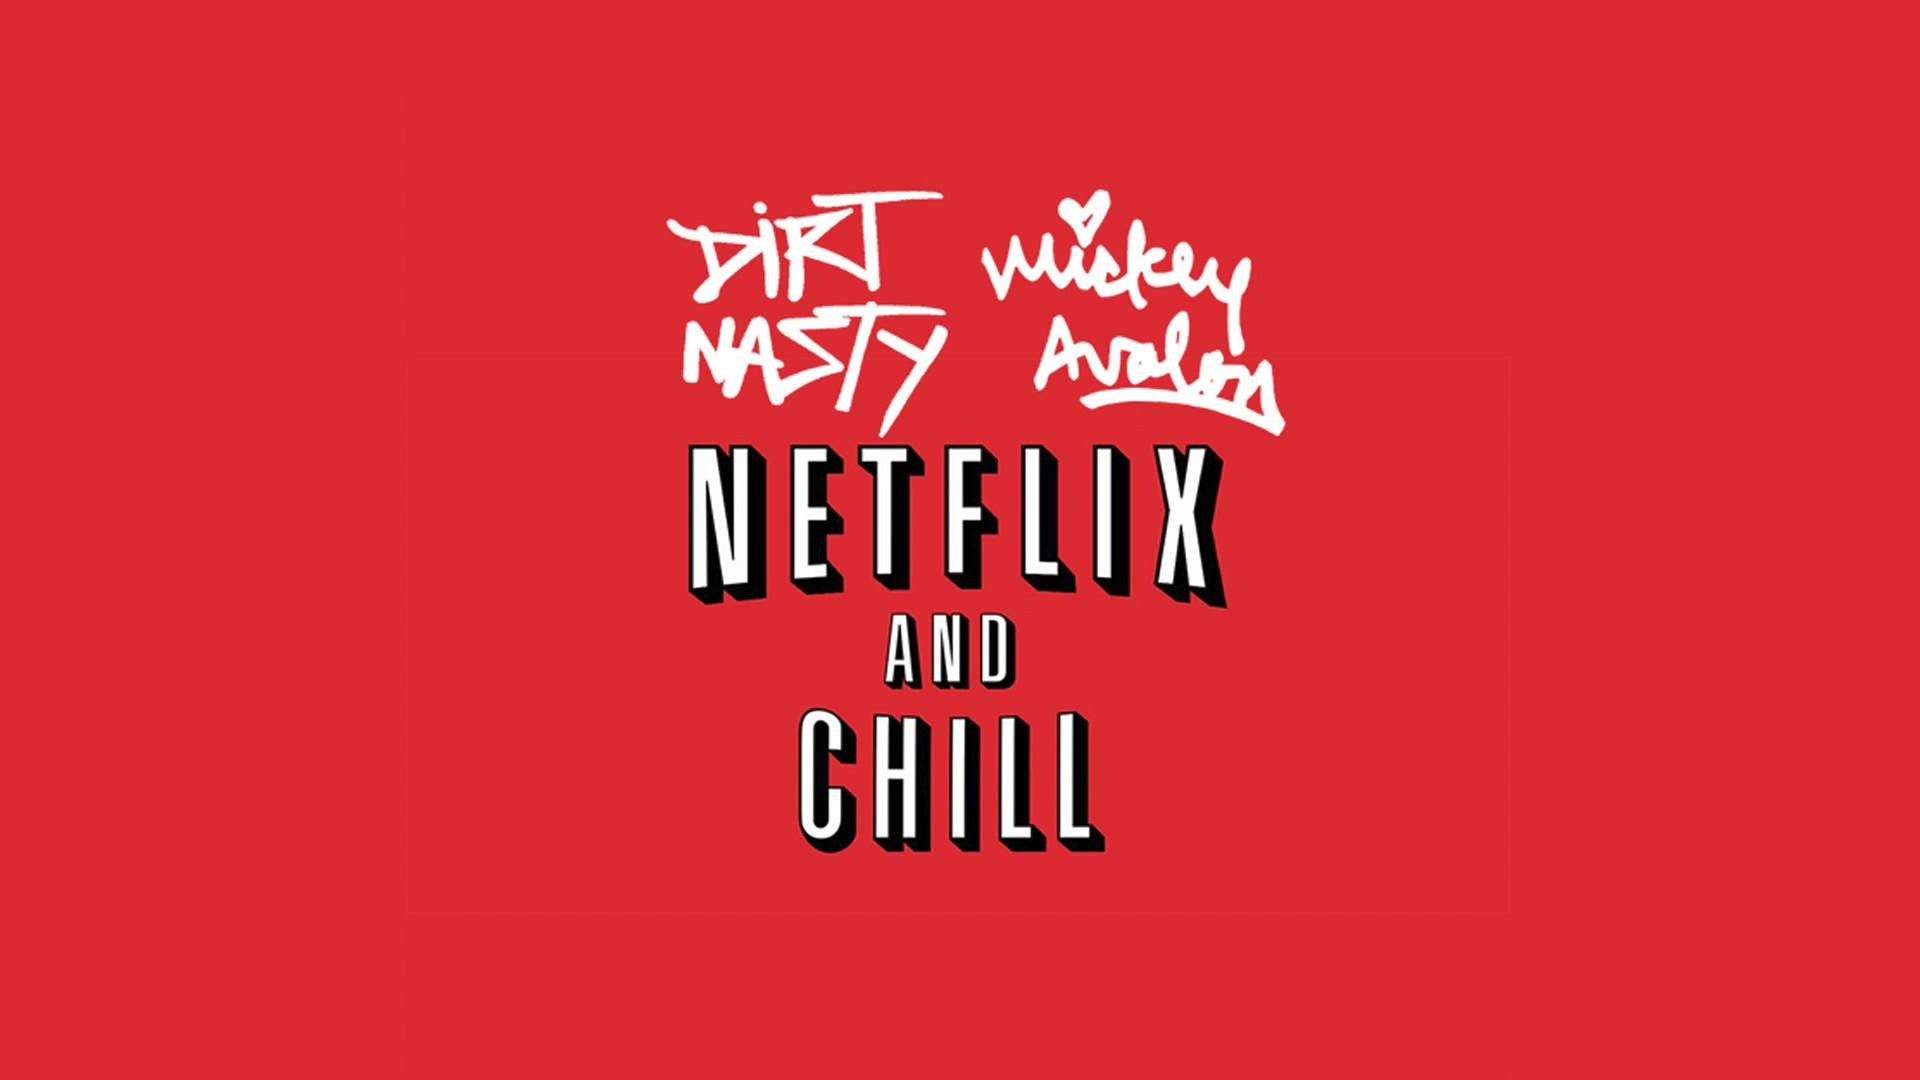 Aesthetic Netflix Logo Wallpapers